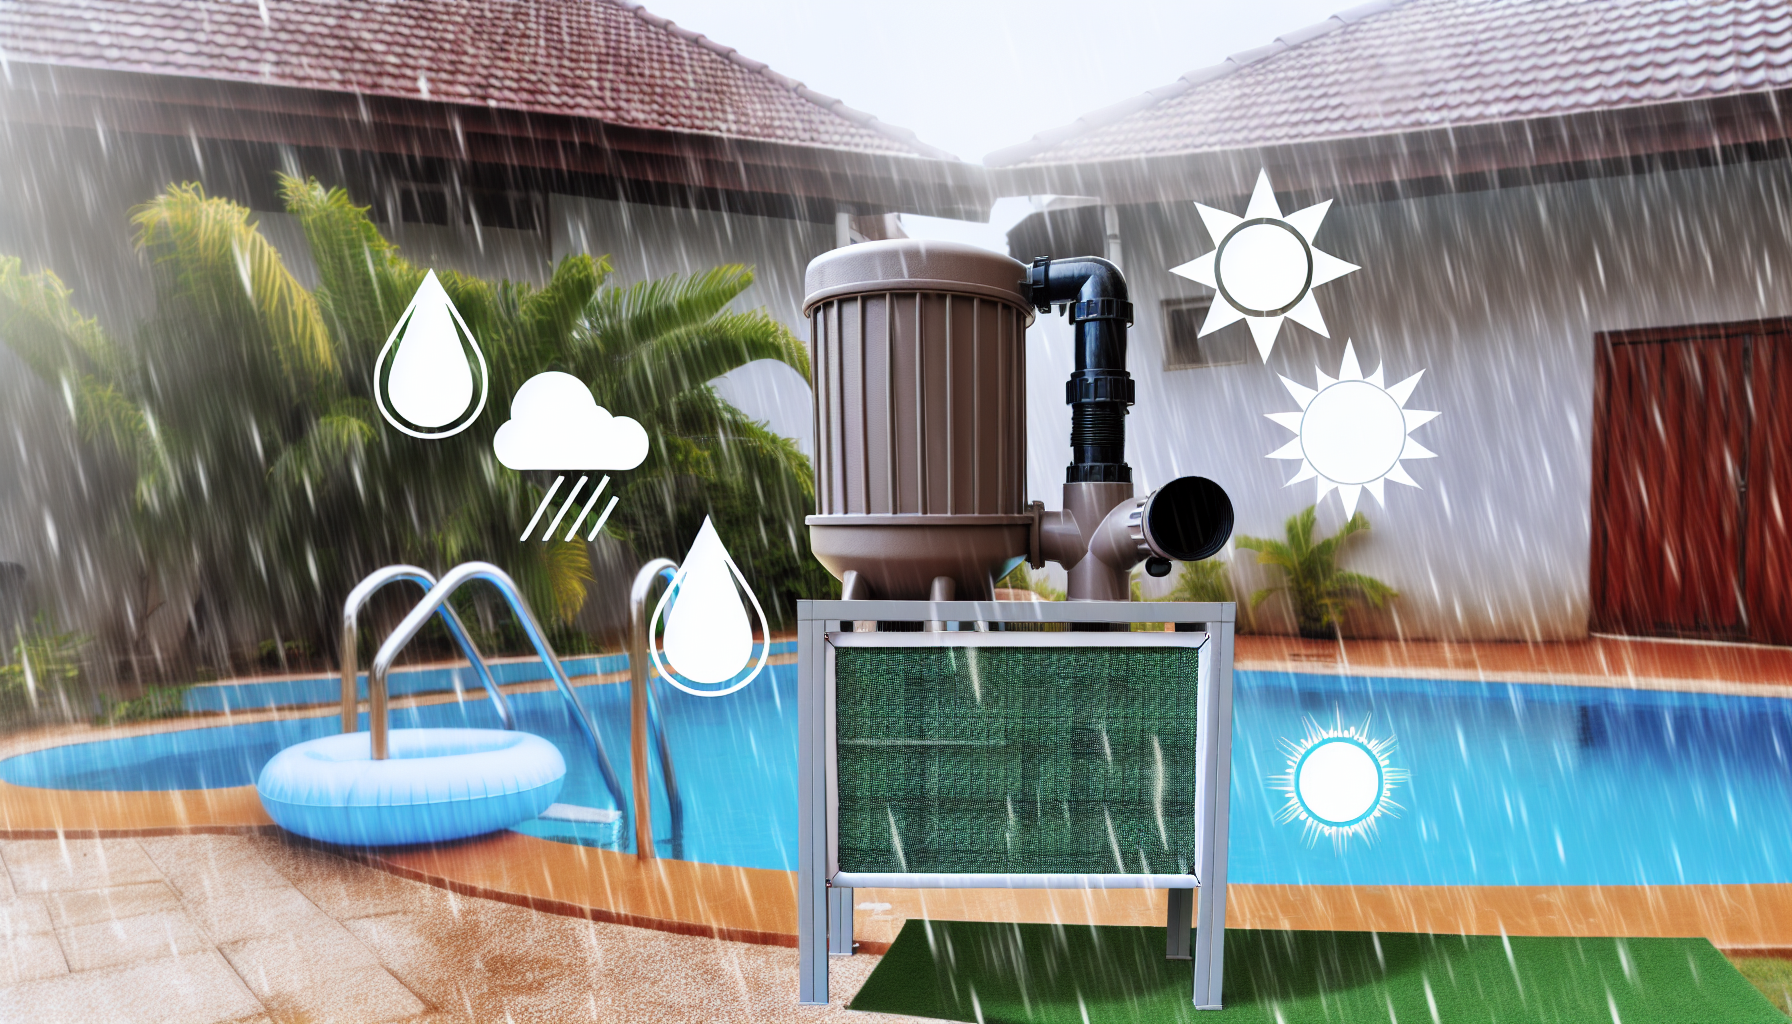 Poolpumpe und Filter bei Regenwetter neben einem Swimmingpool mit Animationssymbolen für Wasser, Wolken und Sonne.